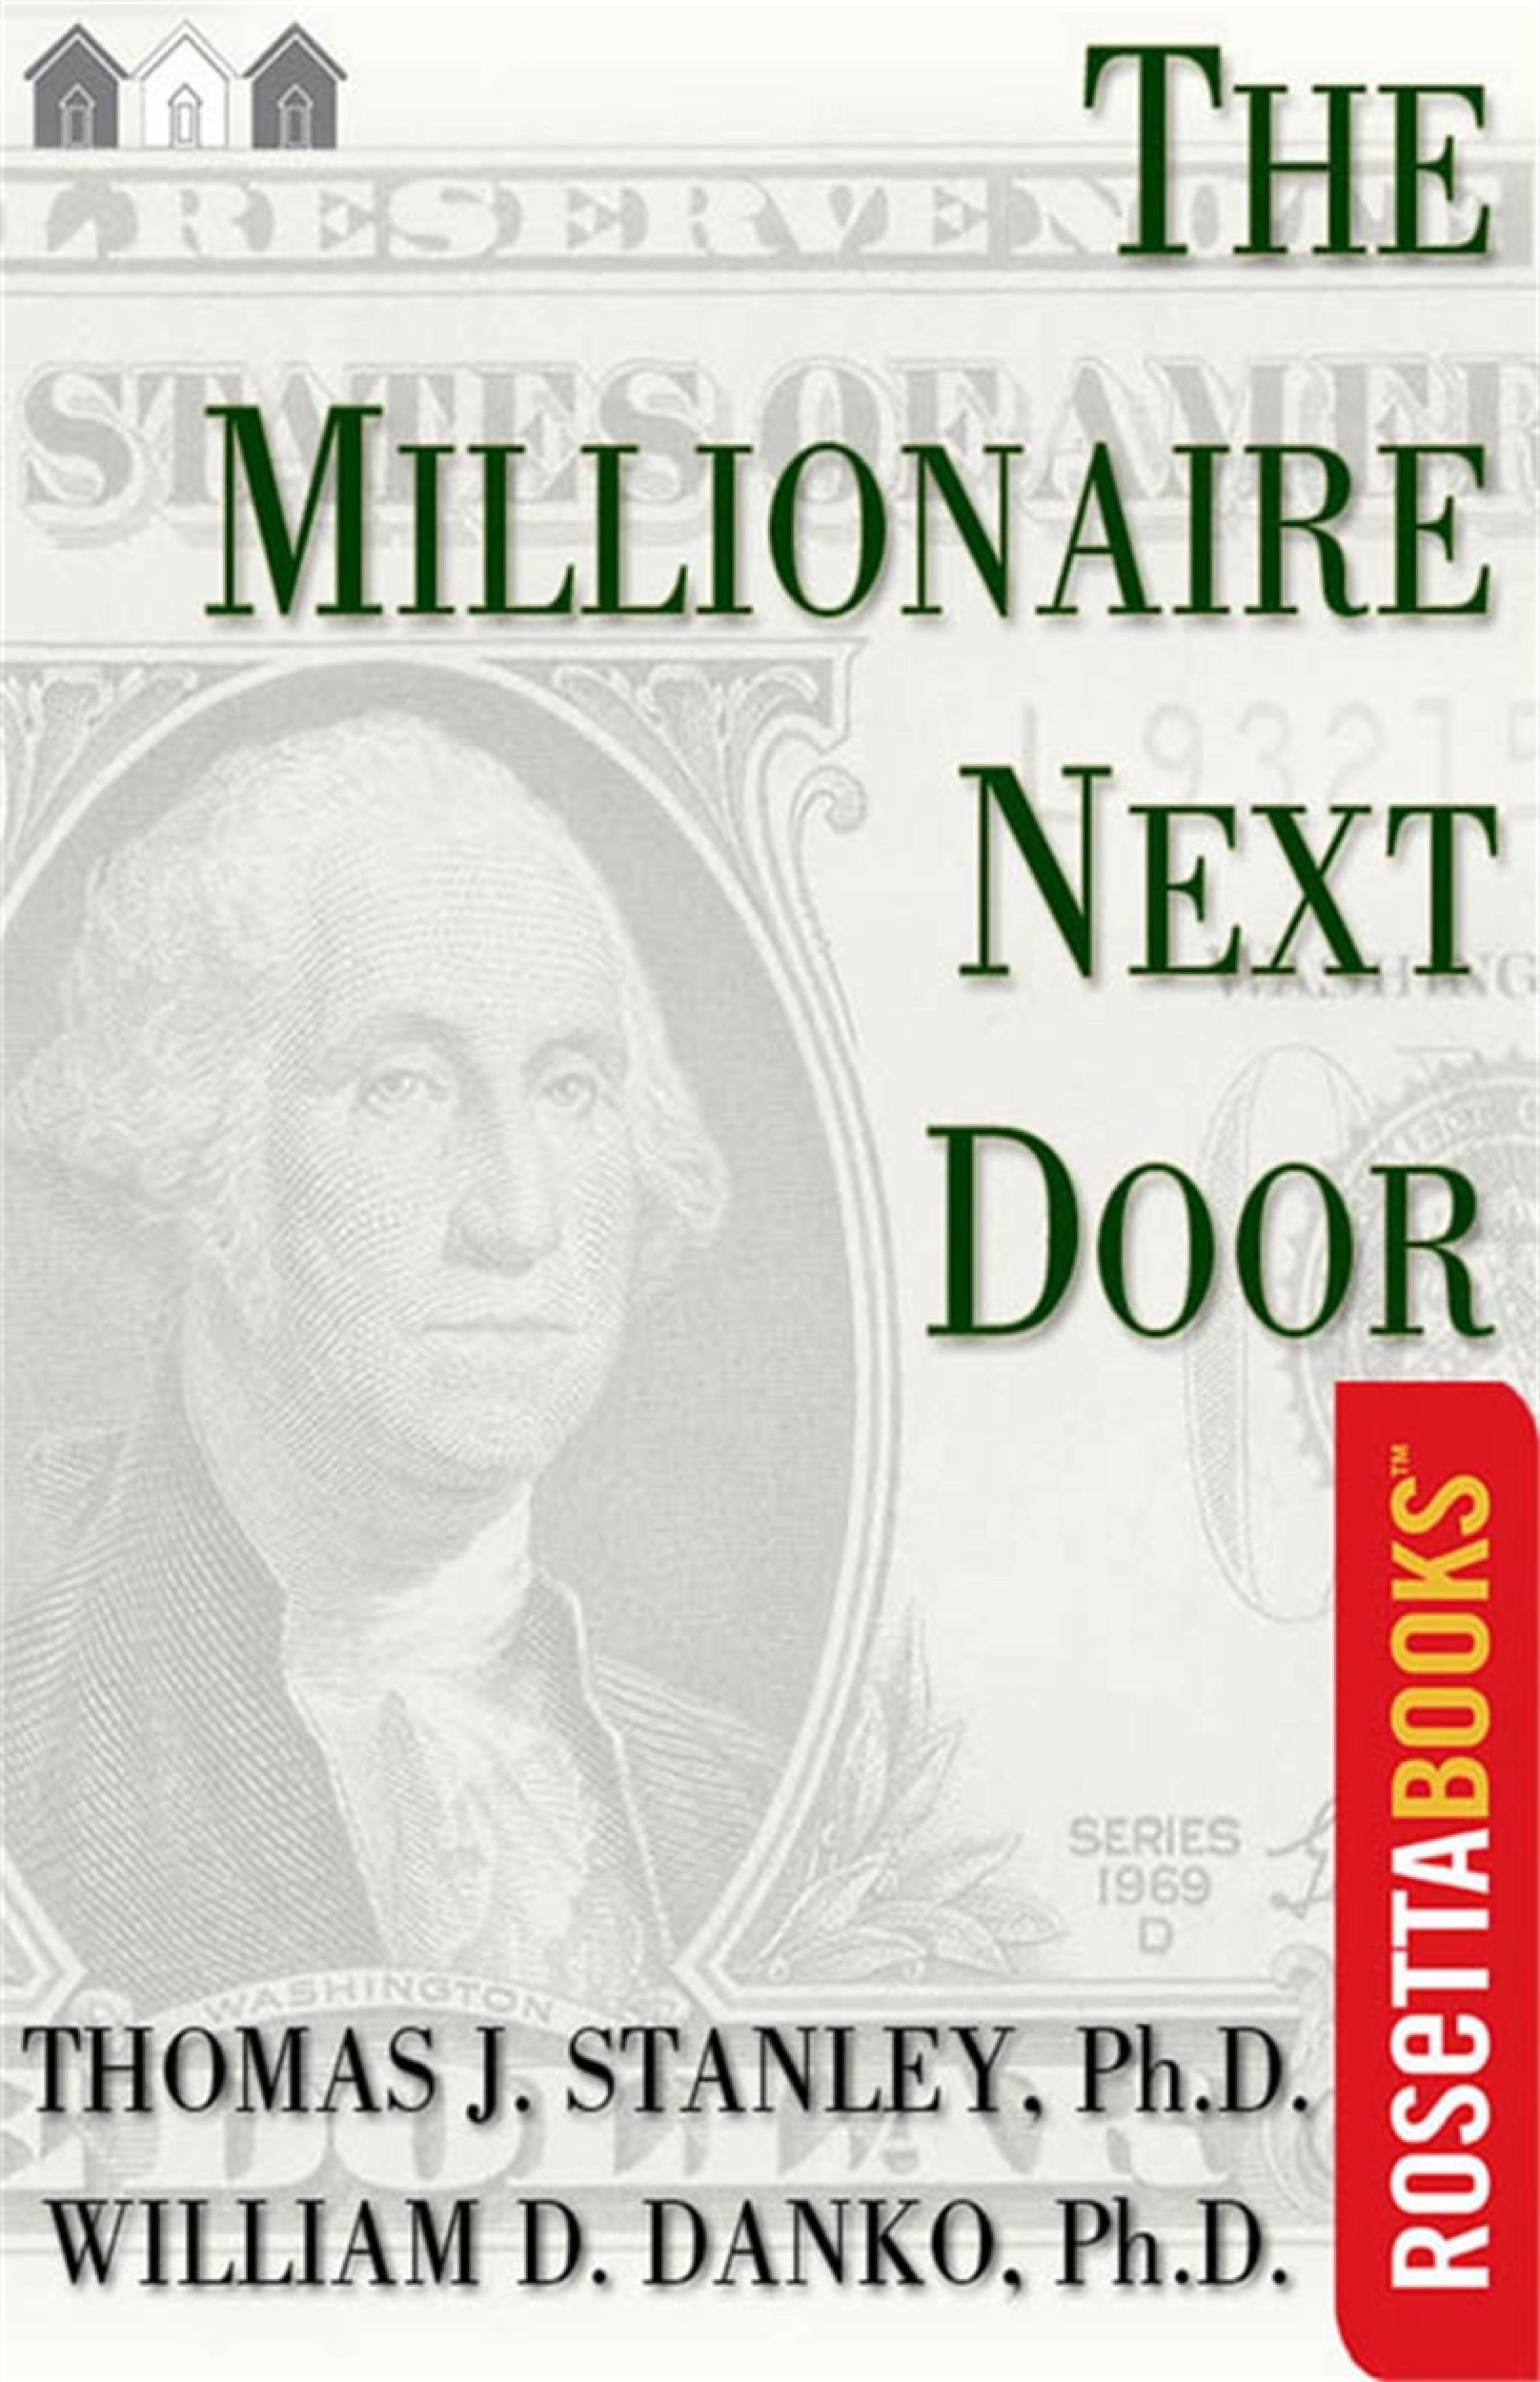 the millionaire next door audiobook